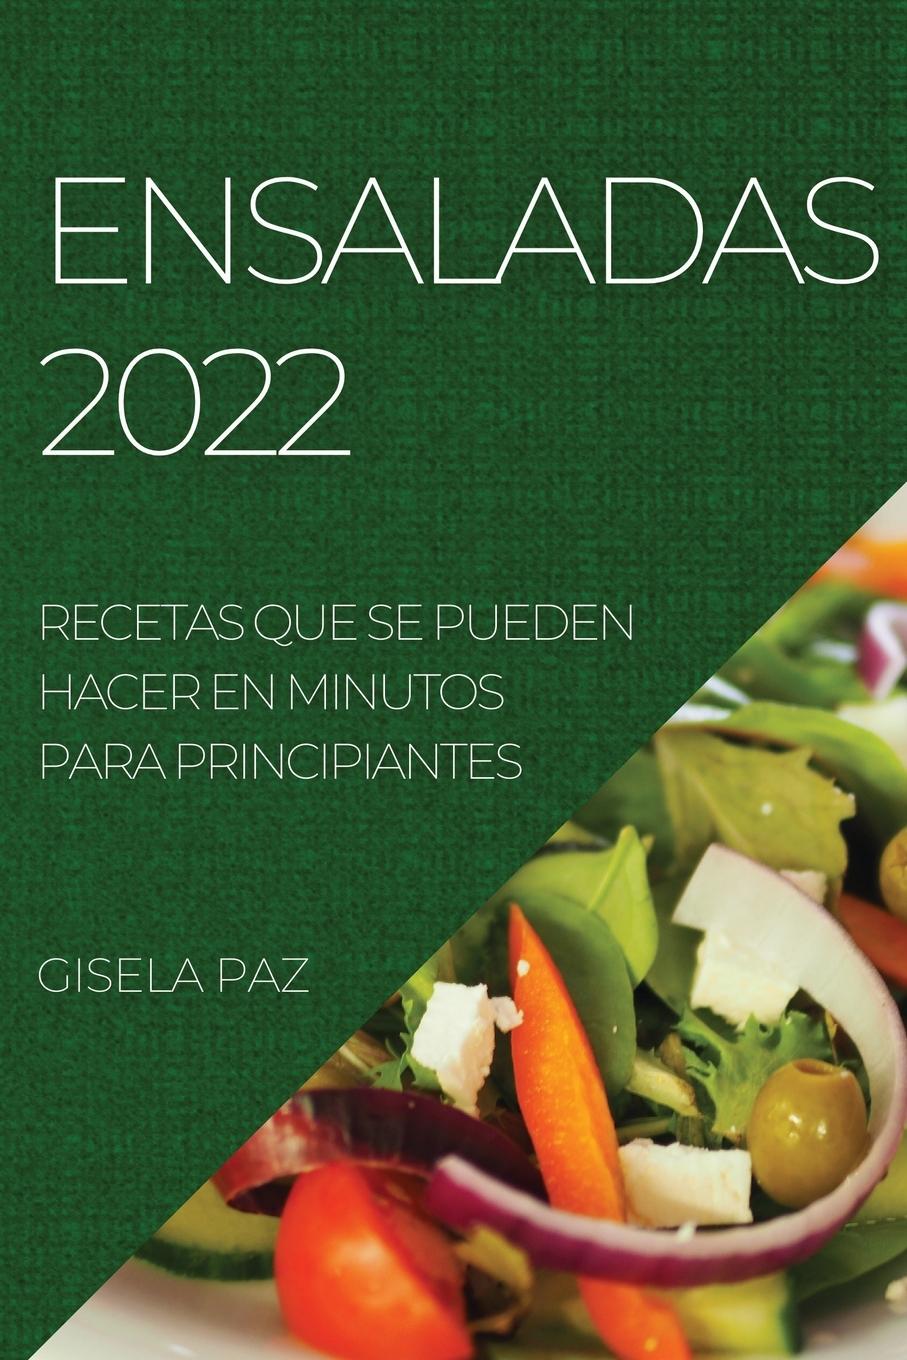 Carte Ensaladas 2022 